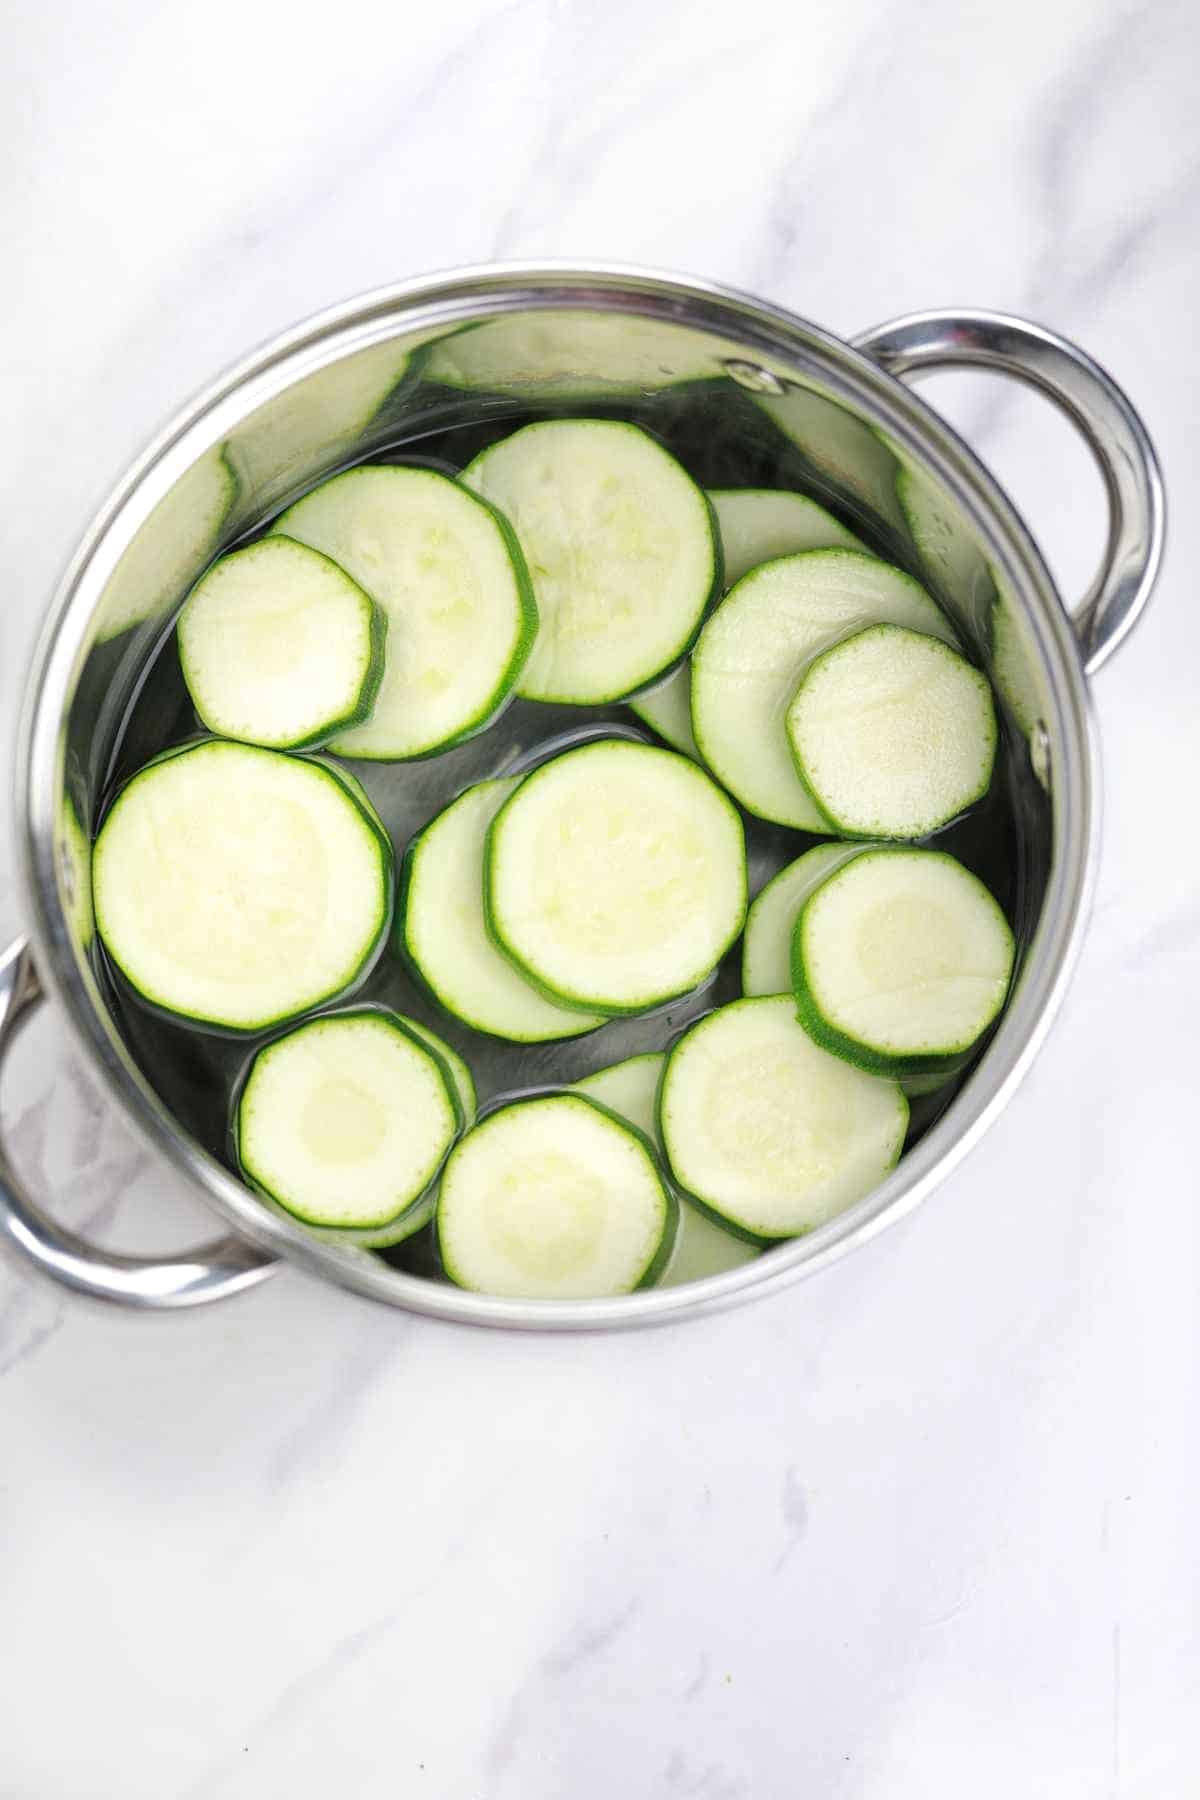 zucchini, salt, and water in a pot.